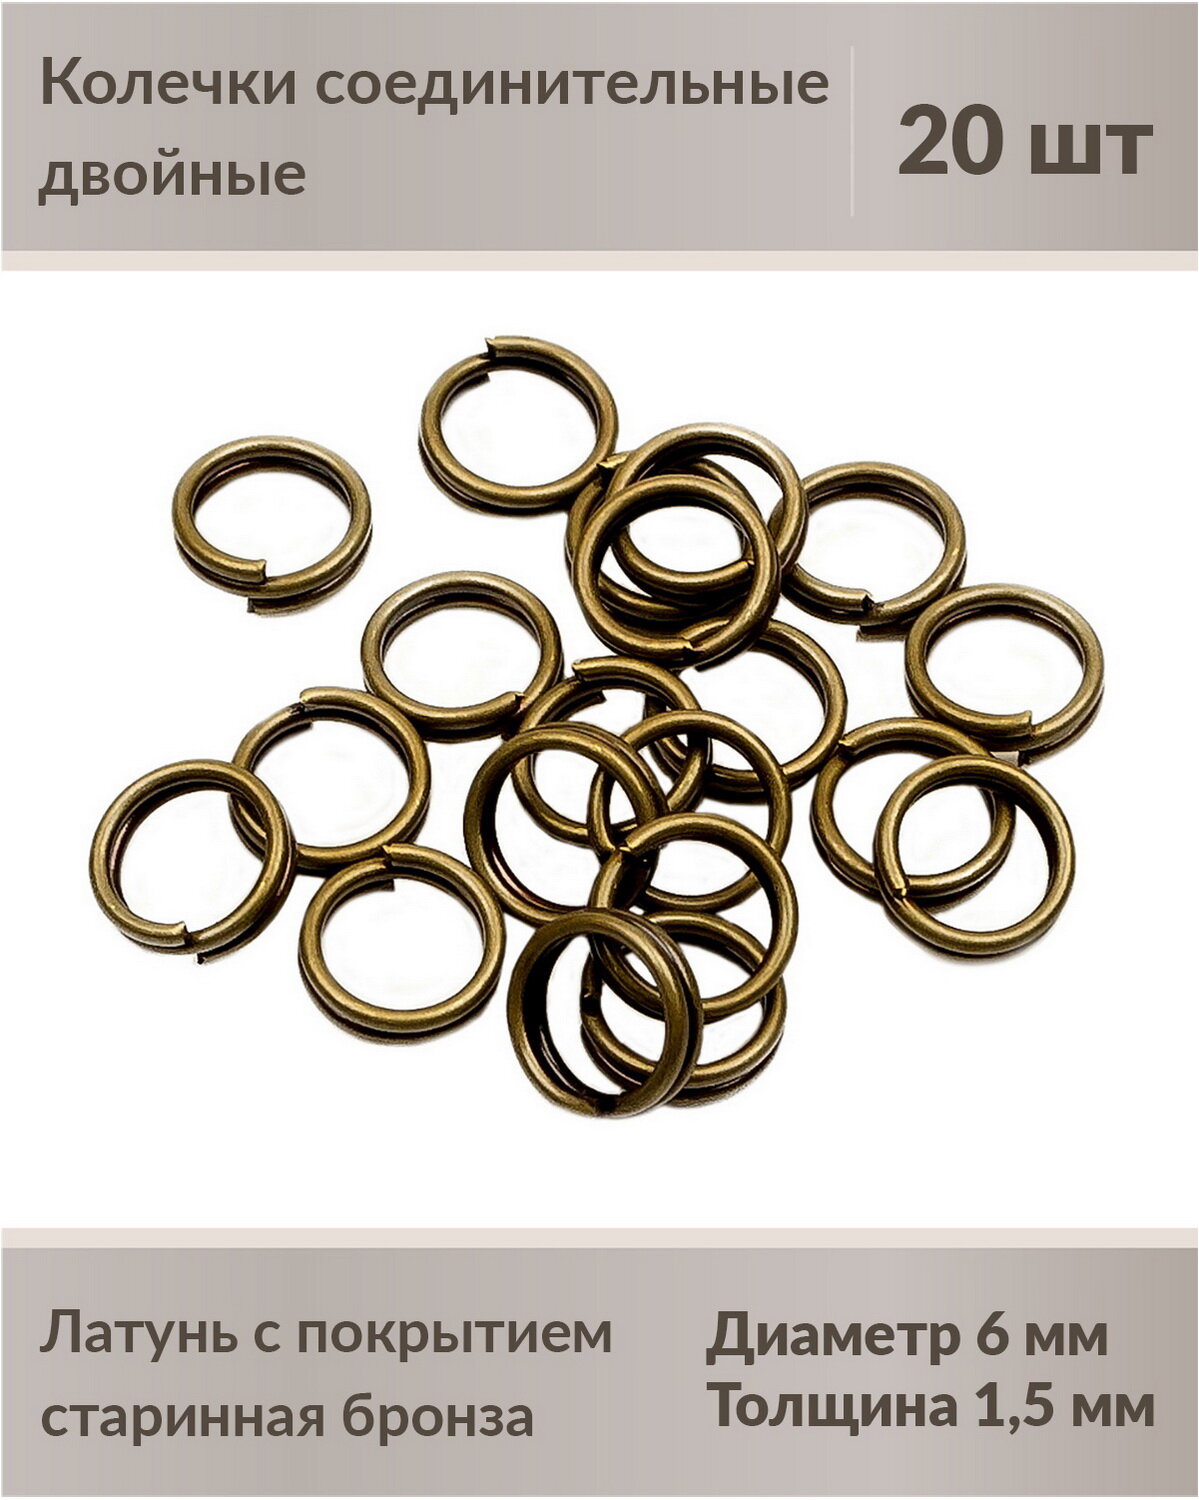 Колечки соединительные, двойные, 6 мм, цвет: старинная бронза, 20 шт.